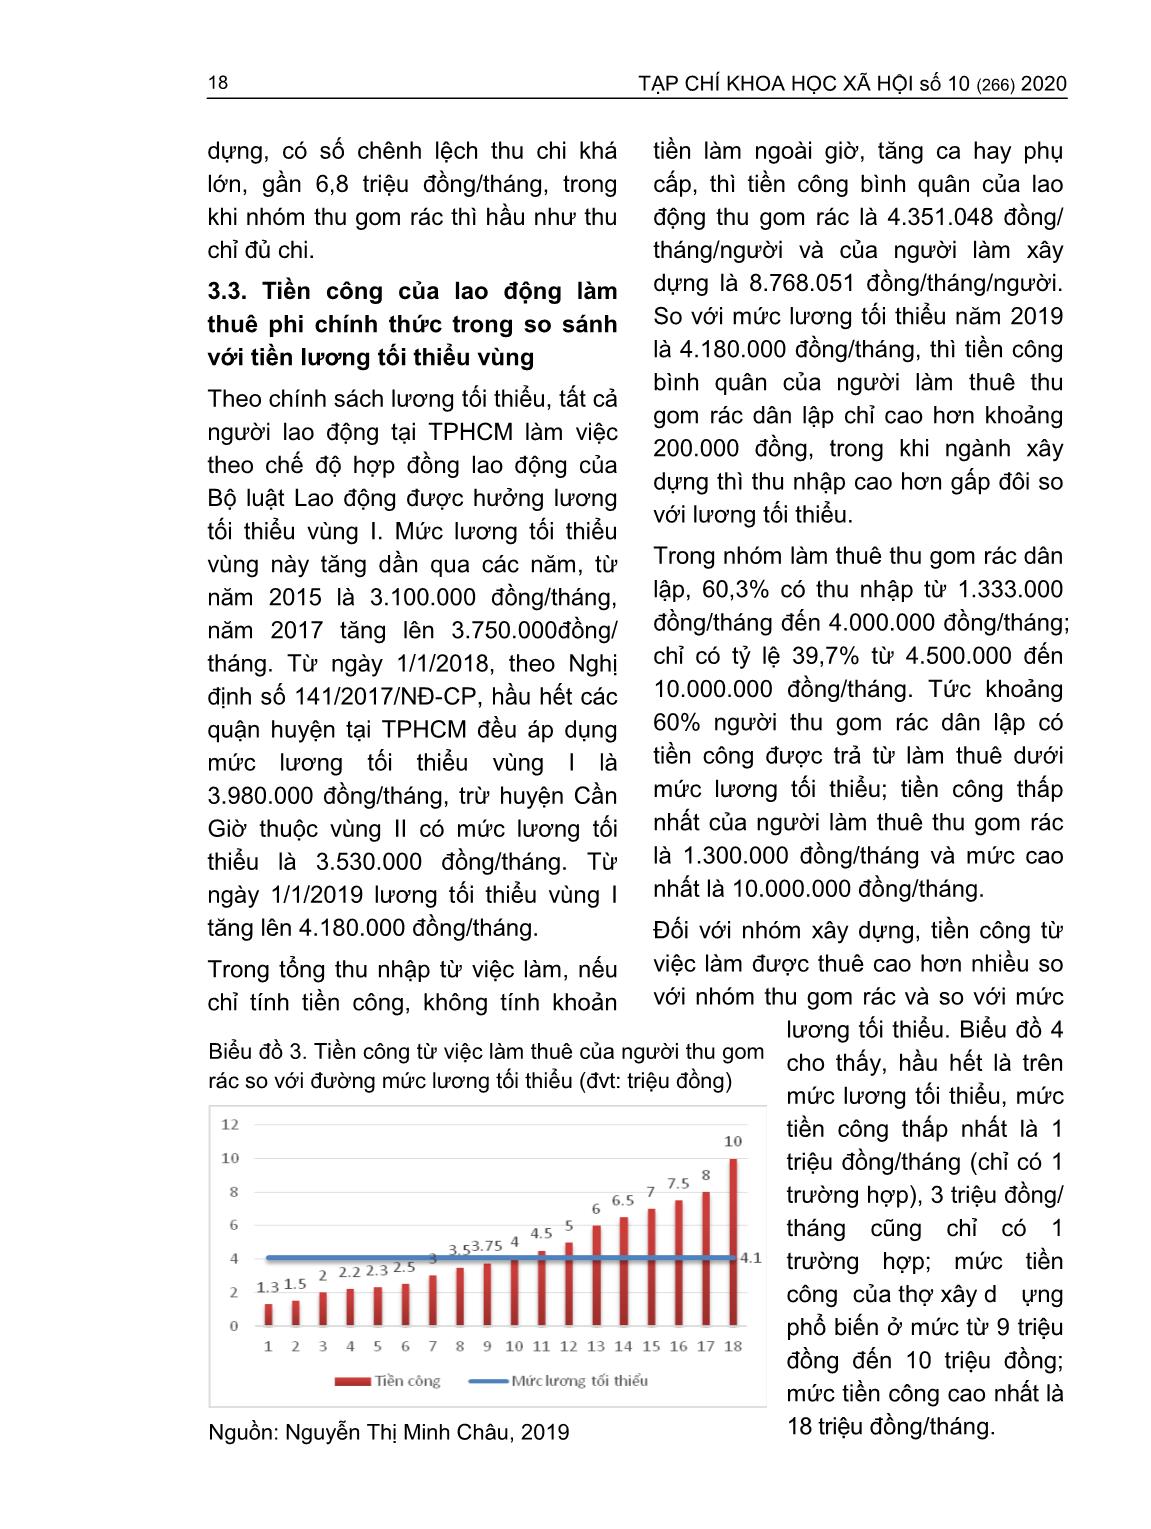 Tiền công của người lao động làm thuê phi chính thức - So sánh với tiền lương tối thiểu vùng và lương đủ sống (Trường hợp người thu gom rác và thợ xây dựng tại thành phố Hồ Chí Minh) trang 7